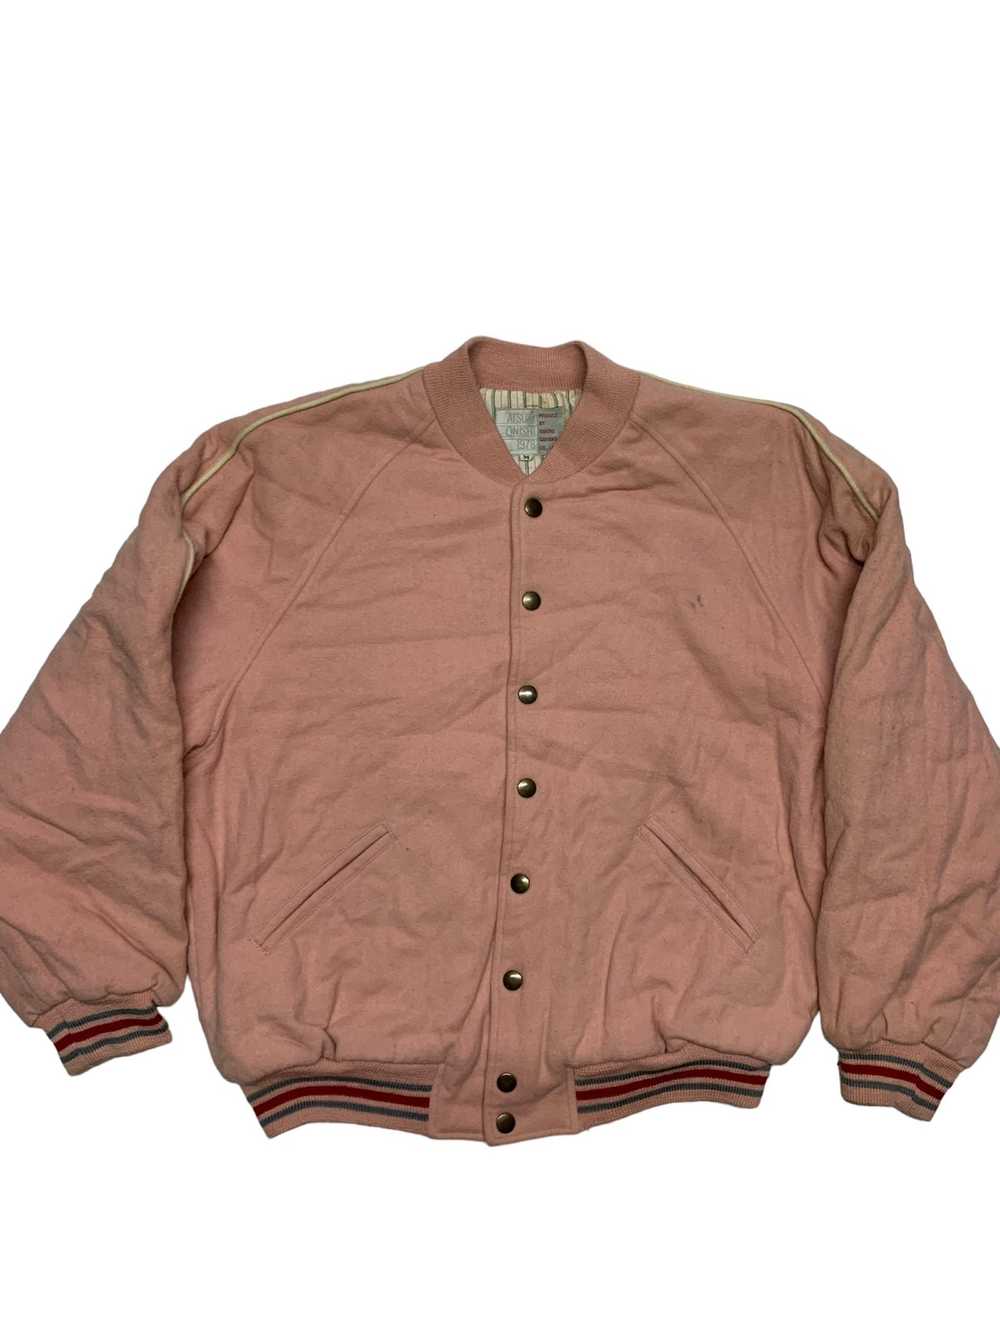 Varsity Jacket Atsuki onishi 1978 produce by quat… - image 3